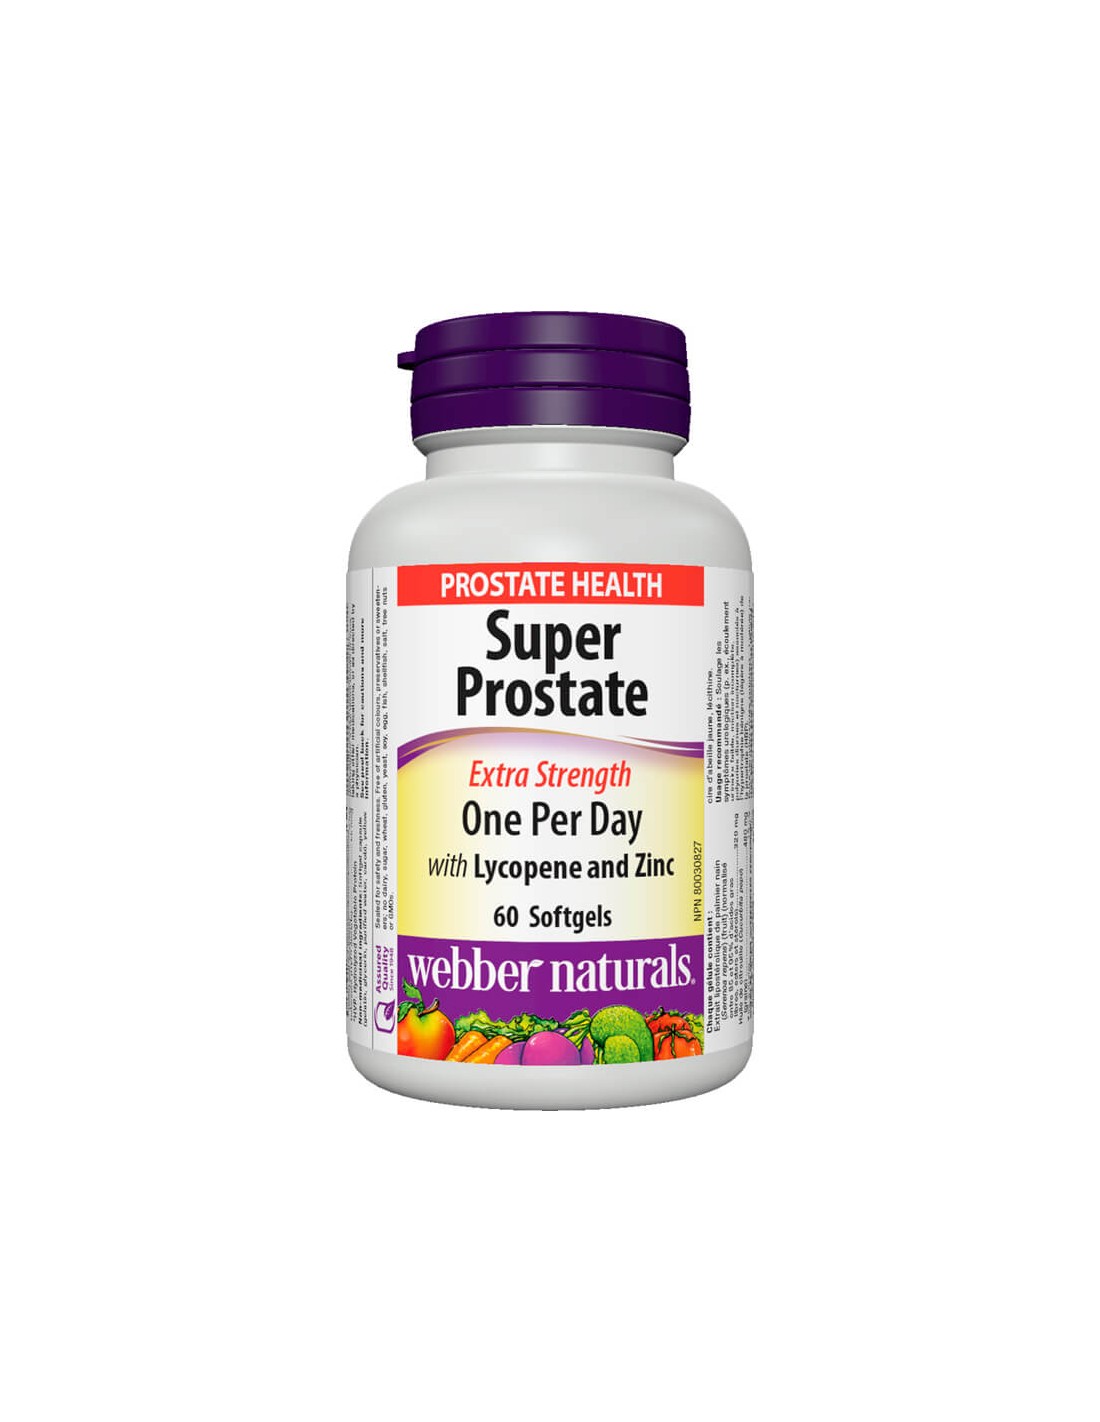 Super Prostate Formula S Likopen I Tsin - Най-добрите хранителни добавки за уголемена простата - Здраве